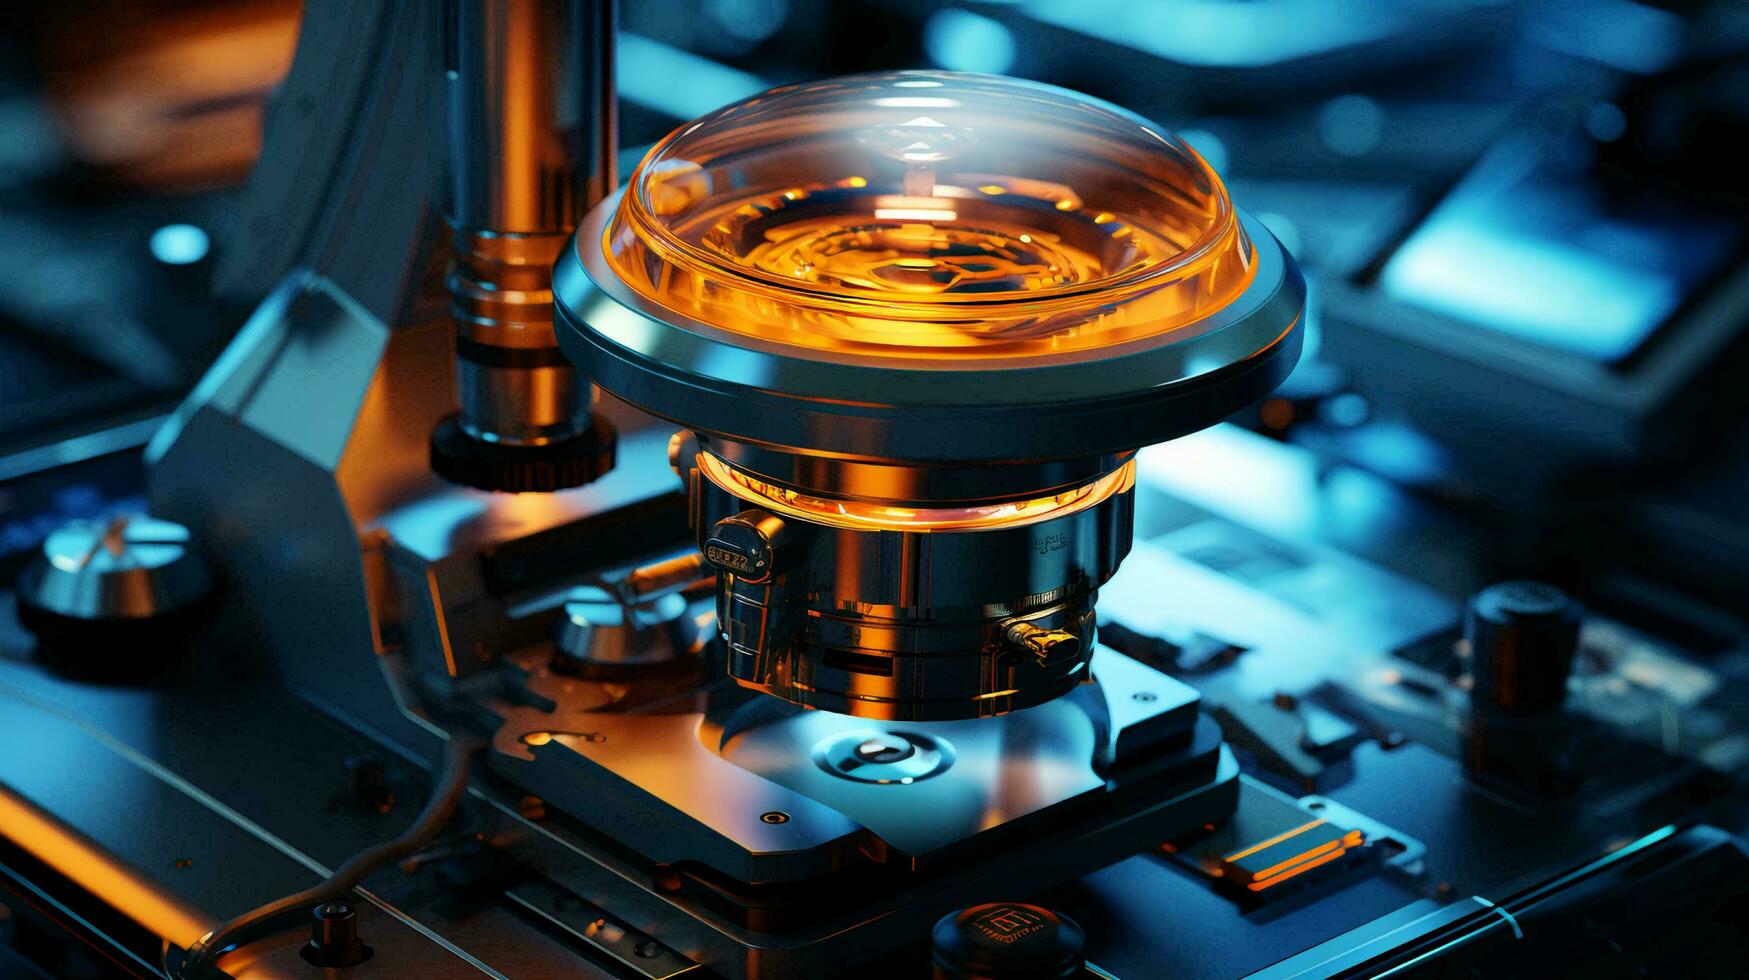 alto Tech futuristico digitale microscopio nel scientifico o medico laboratorio per ricerca foto